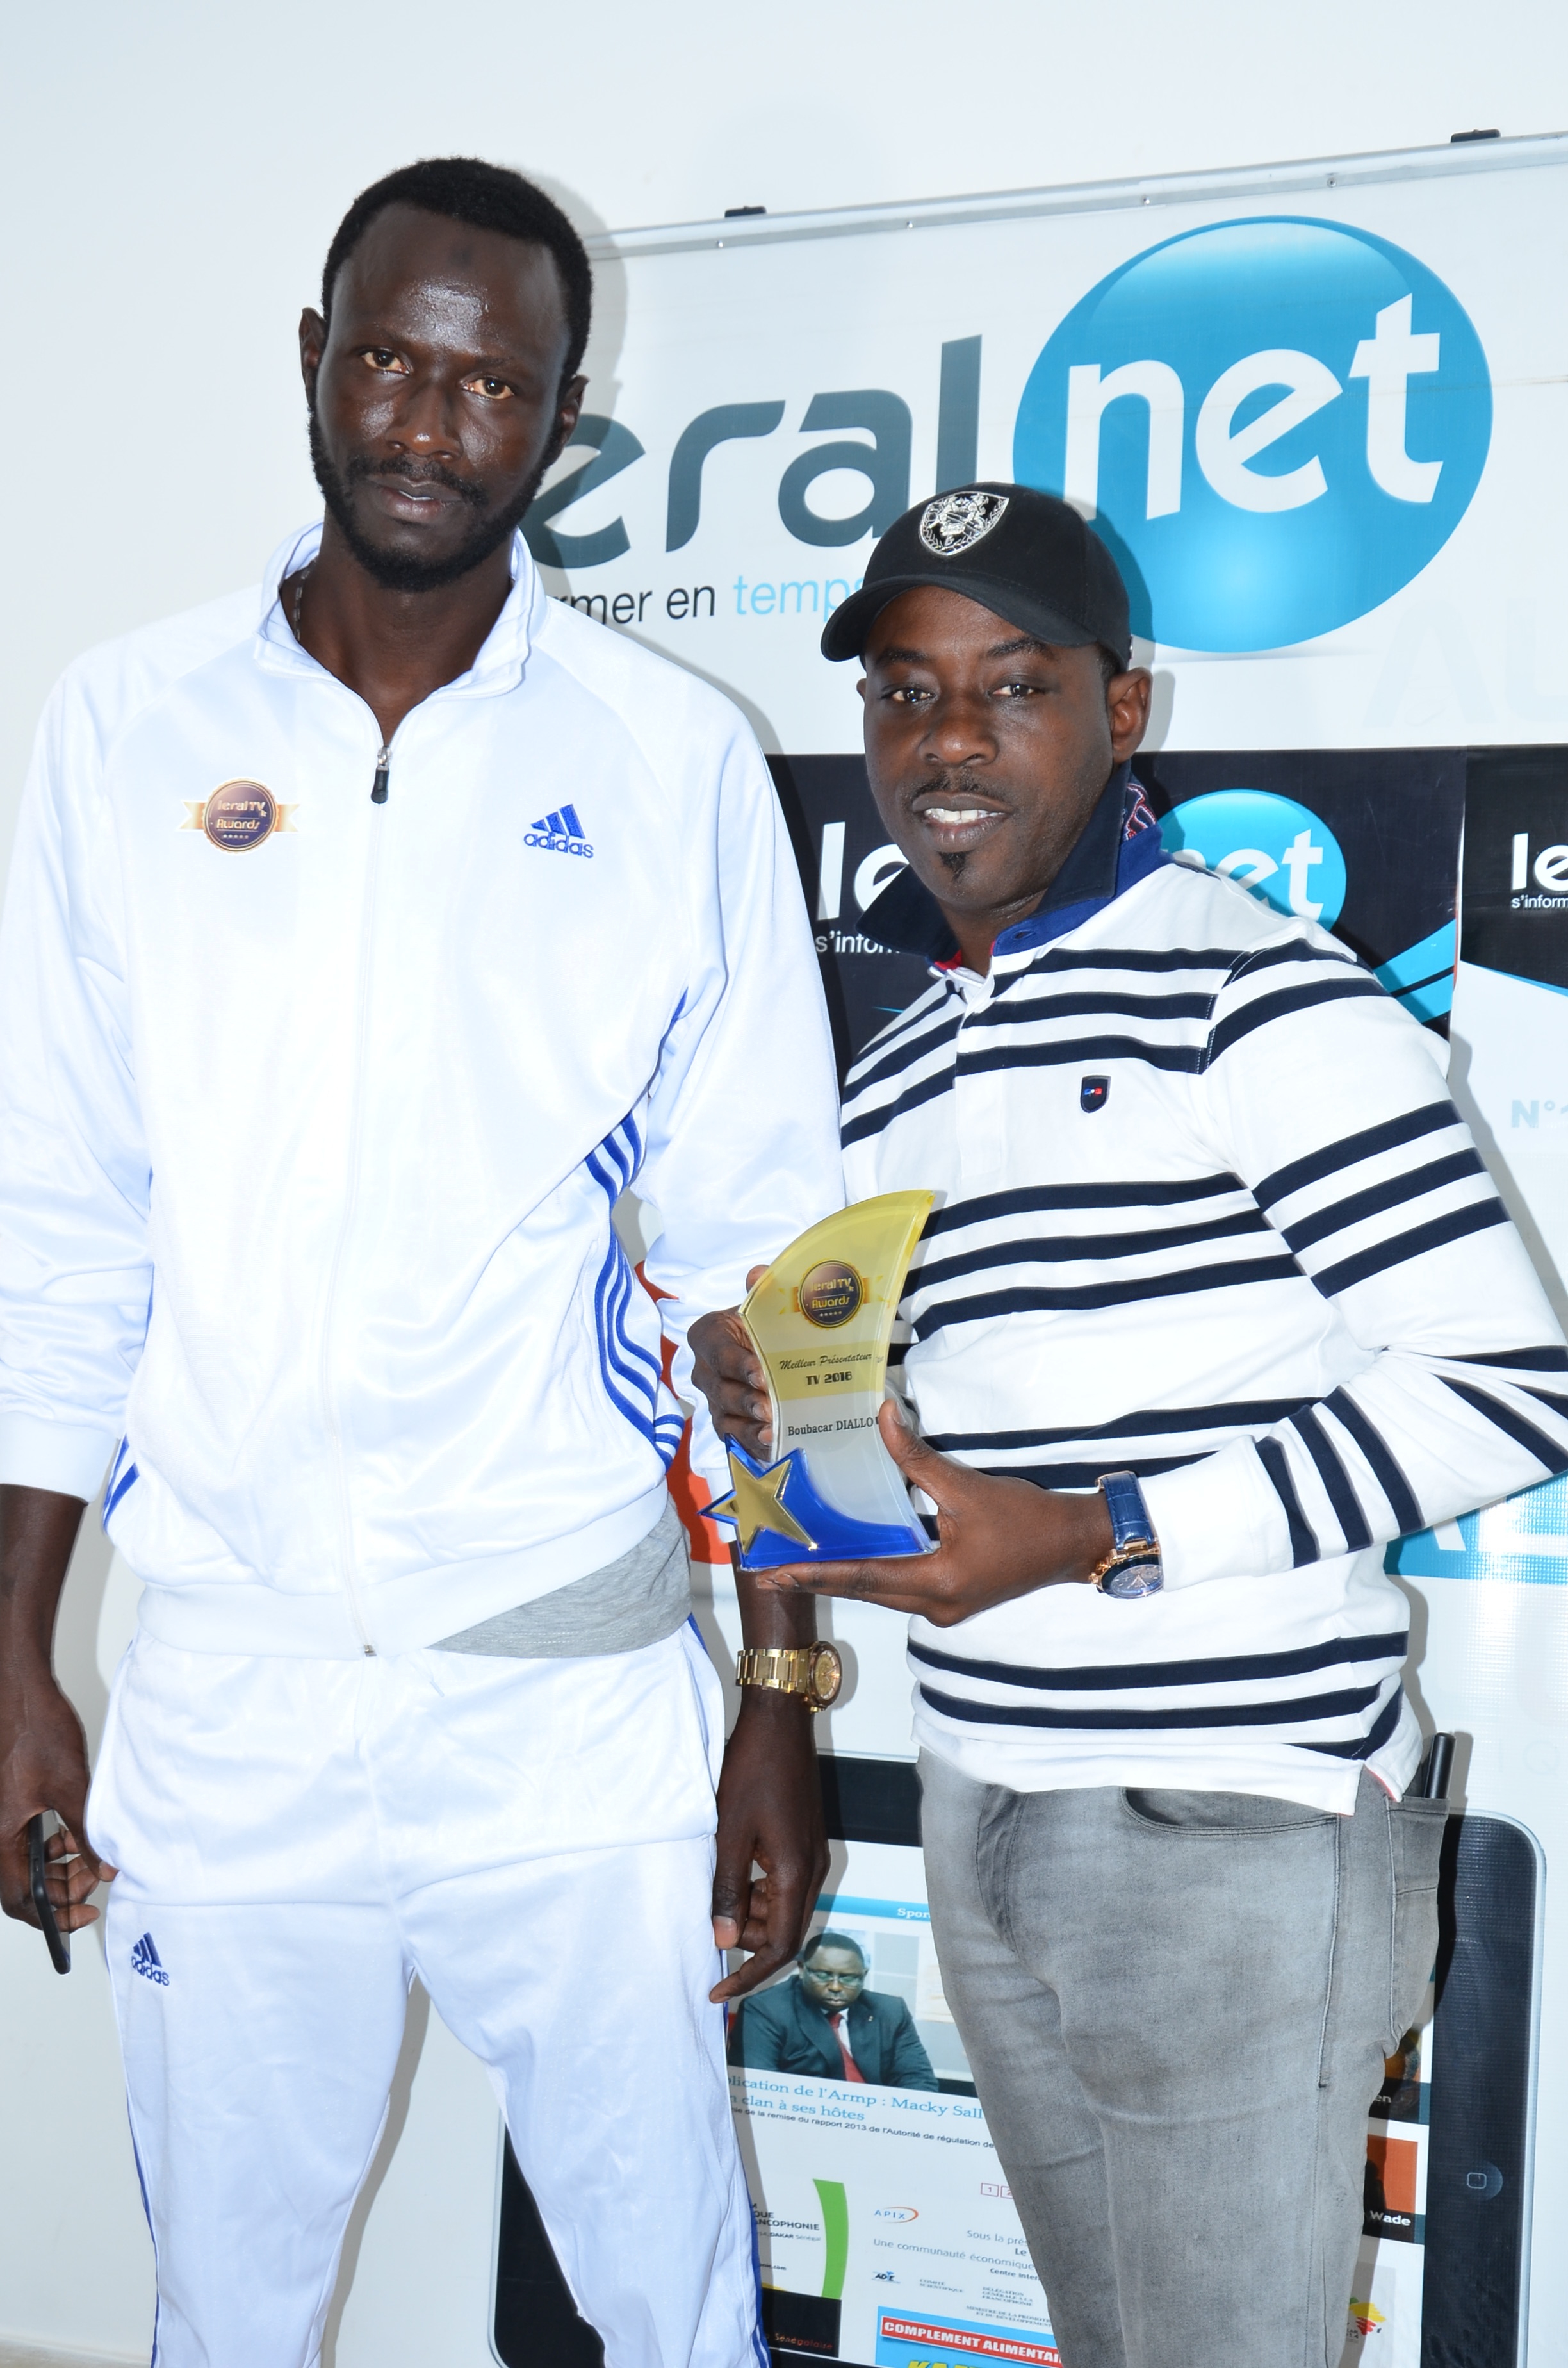 Les images de la remise du trophée de "Meilleur Présentateur de l'année 2018" à Boubacar Diallo